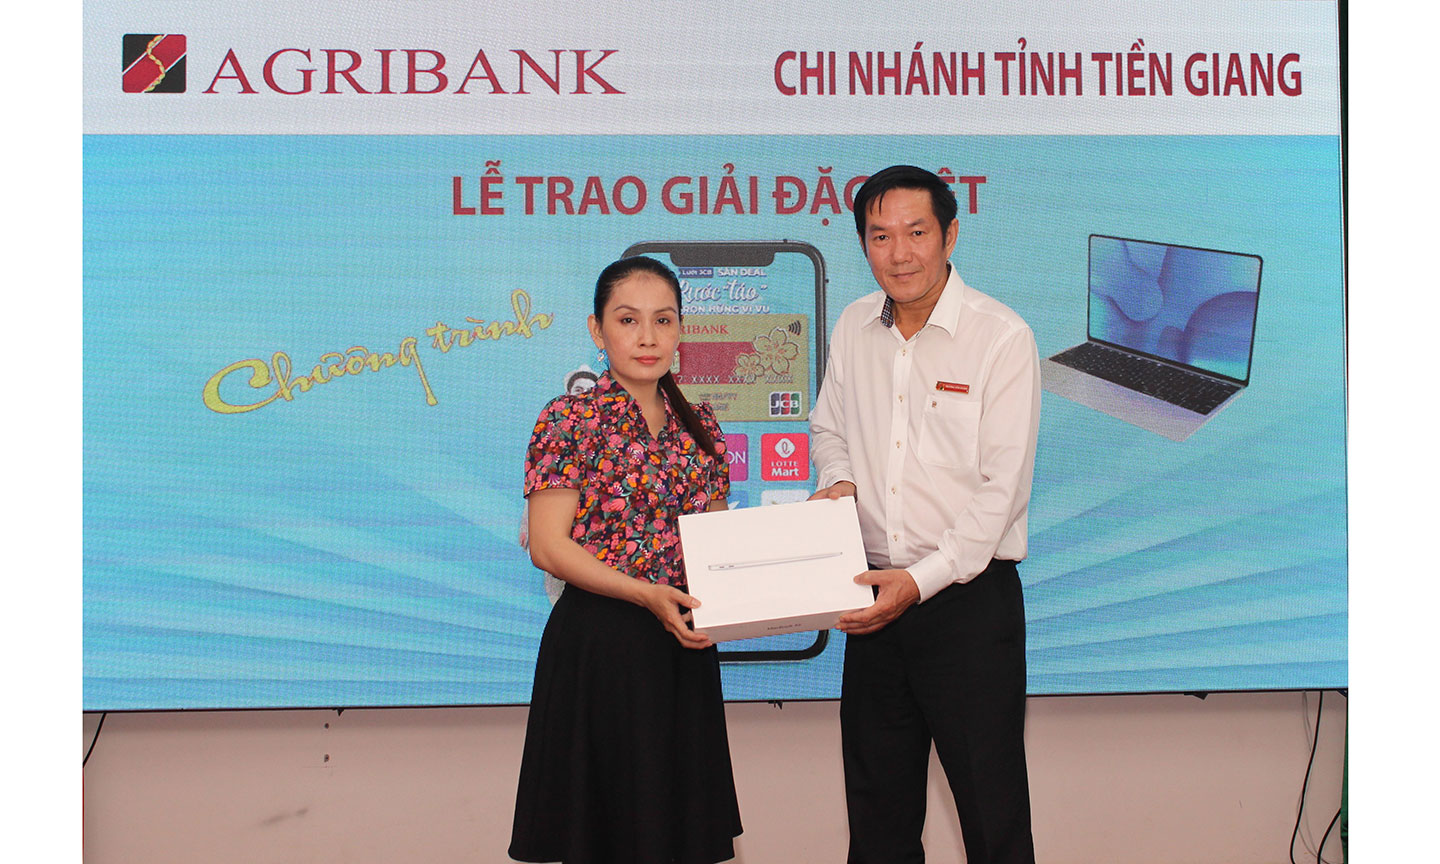 Phó Giám đốc Trương Văn Đoàn trao thưởng cho khách hàng may mắn.